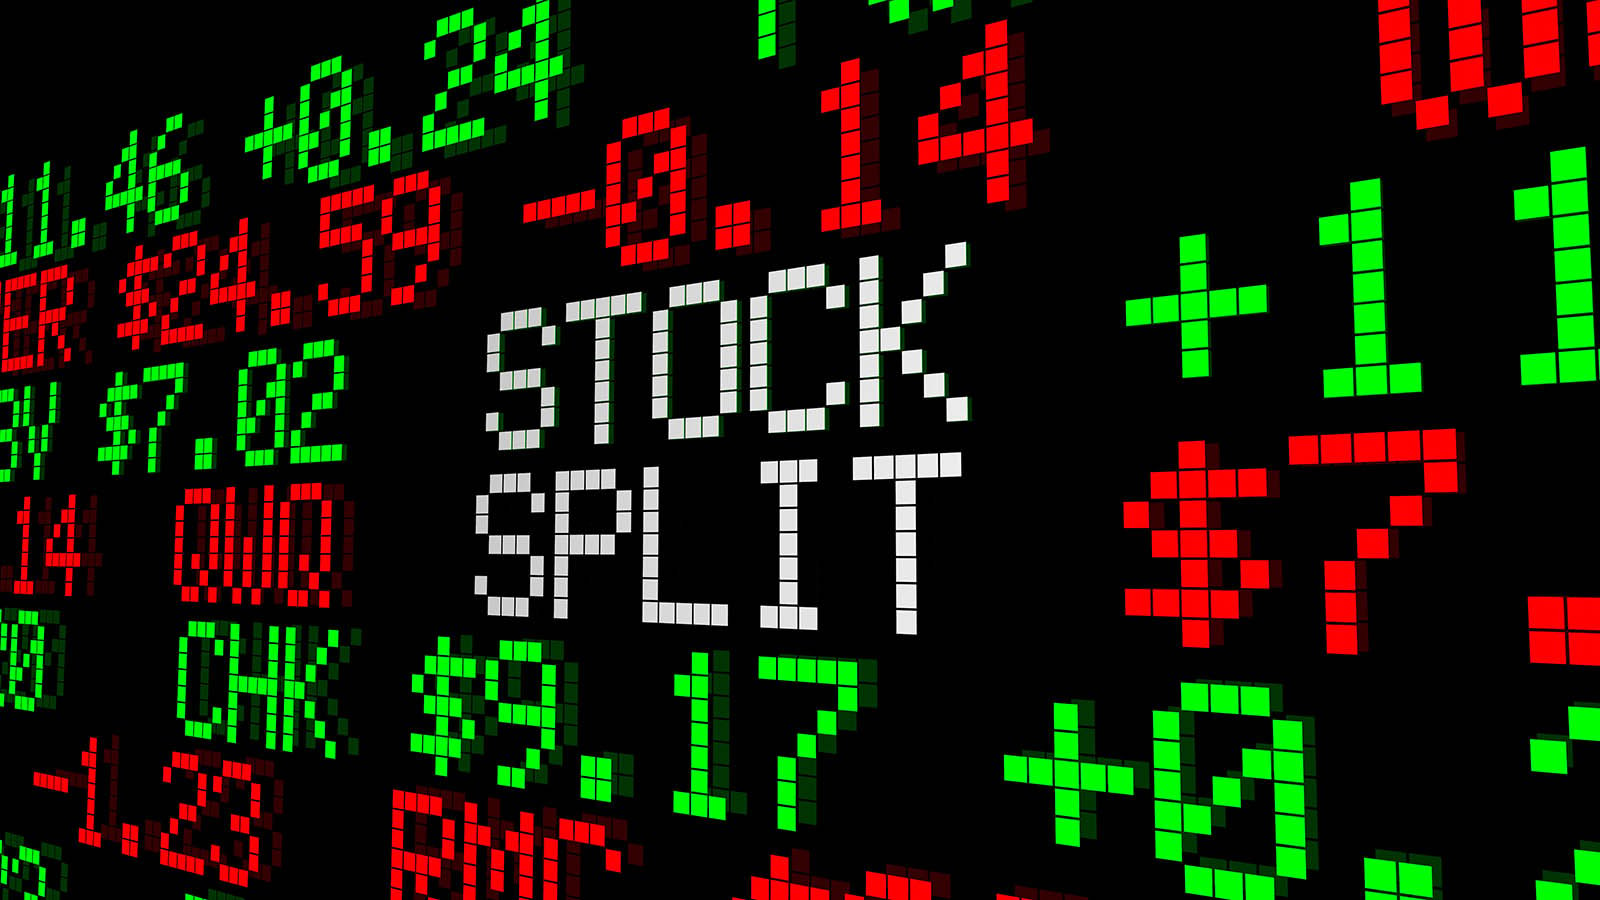 A digital image of a ticker tape reads "STOCK SPLIT."